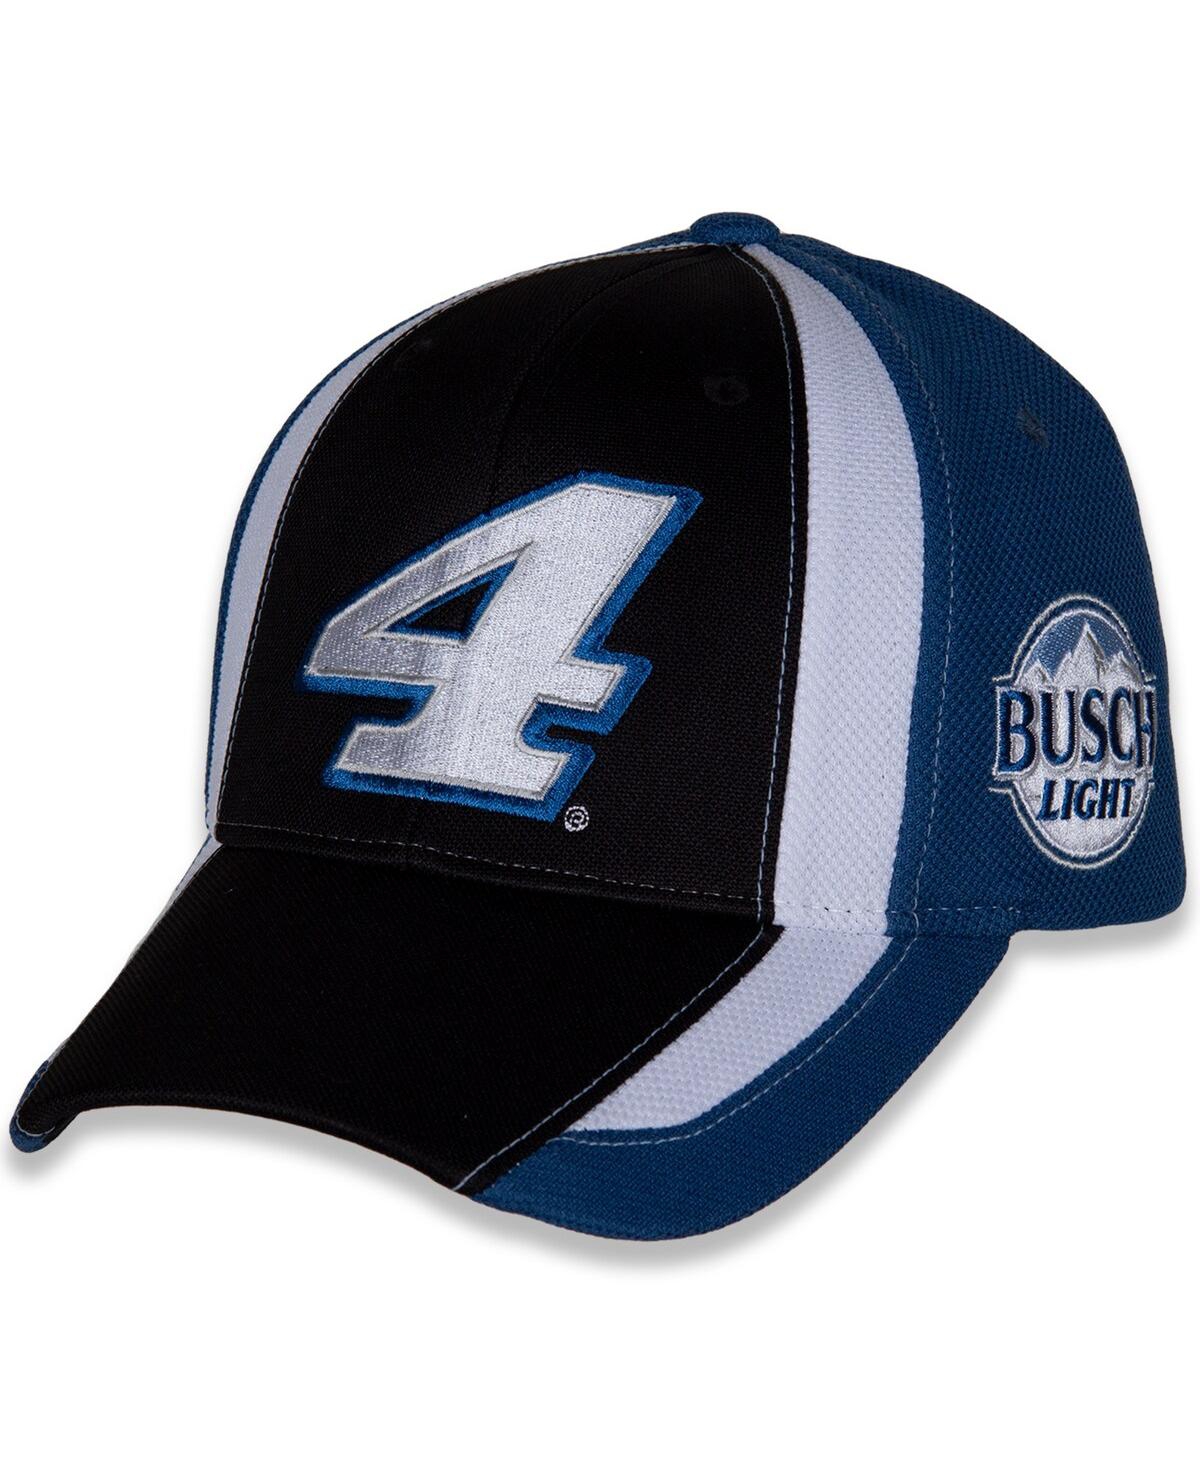 Stewart-haas Racing Team Collection Men's  Black, Blue Kevin Harvick Restart Adjustable Hat In Black,blue